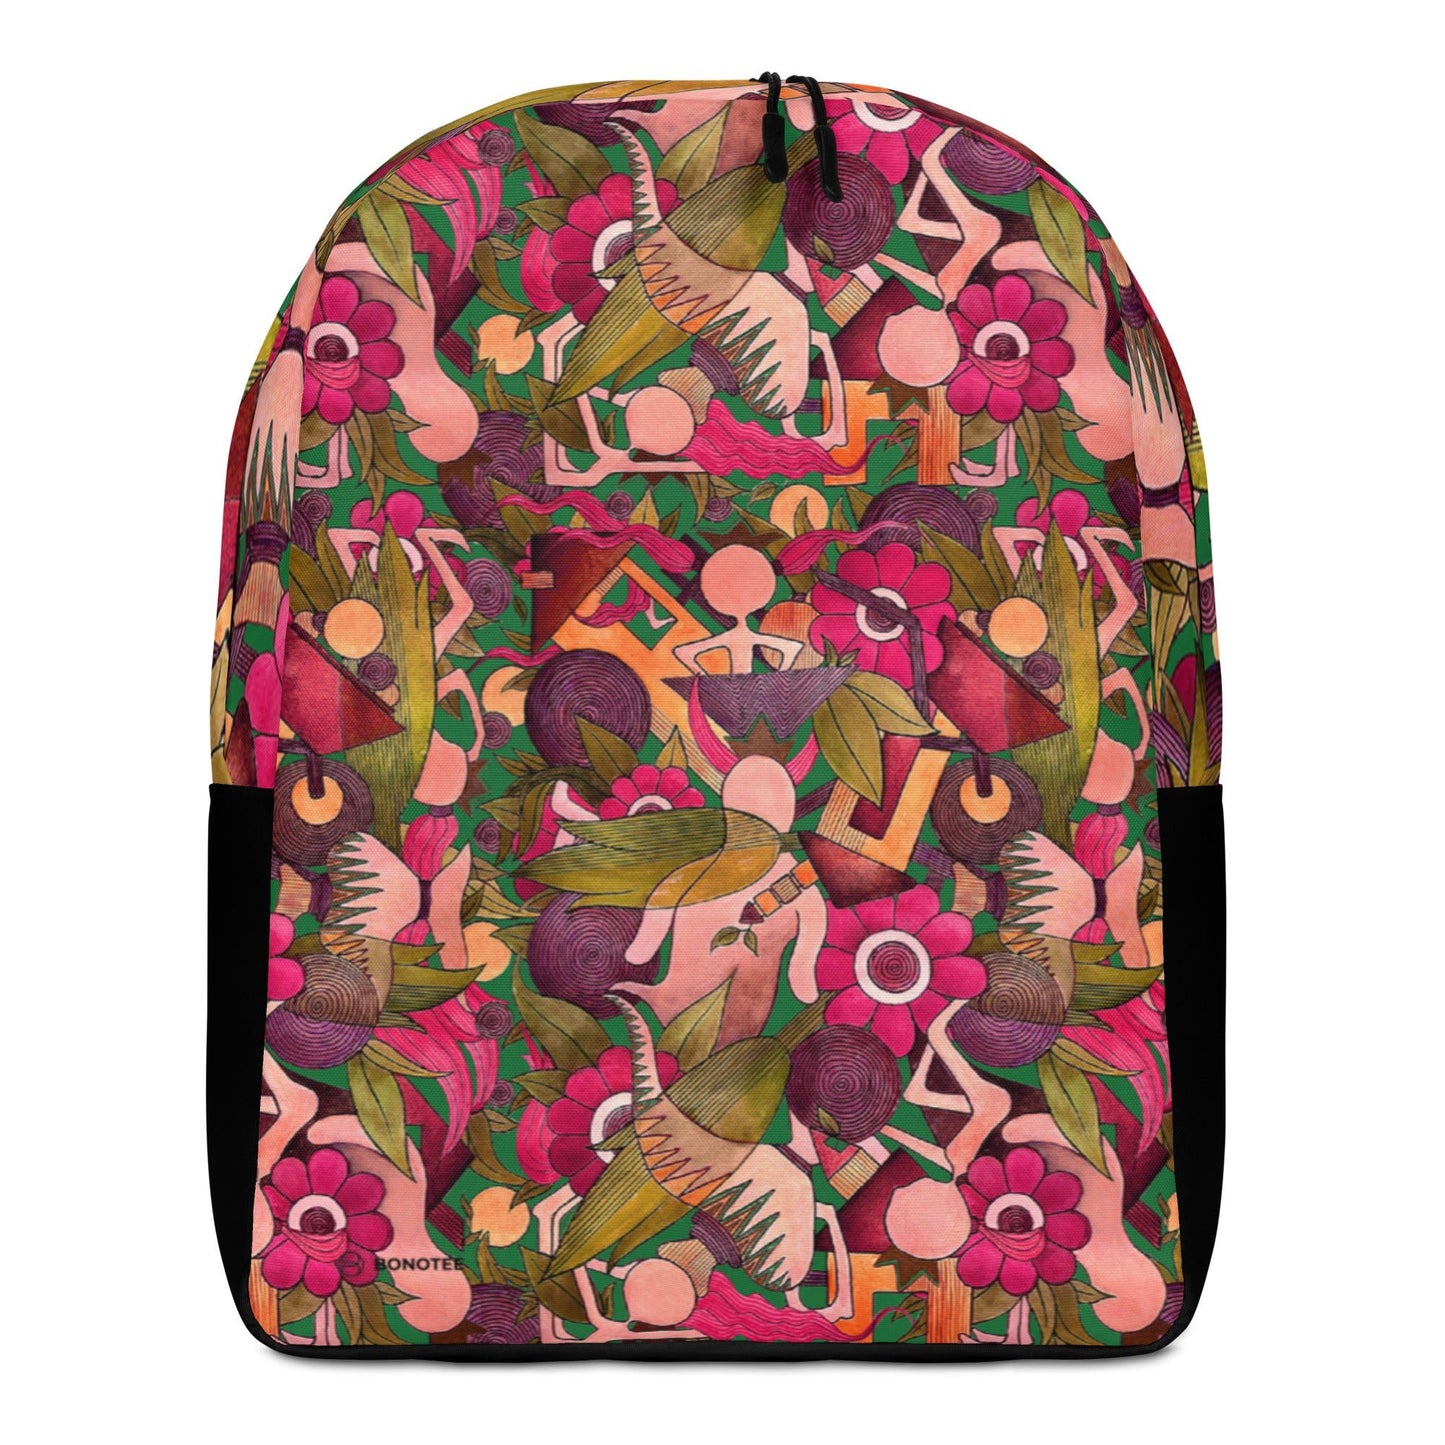 LOTUS Minimalist Backpack - Bonotee